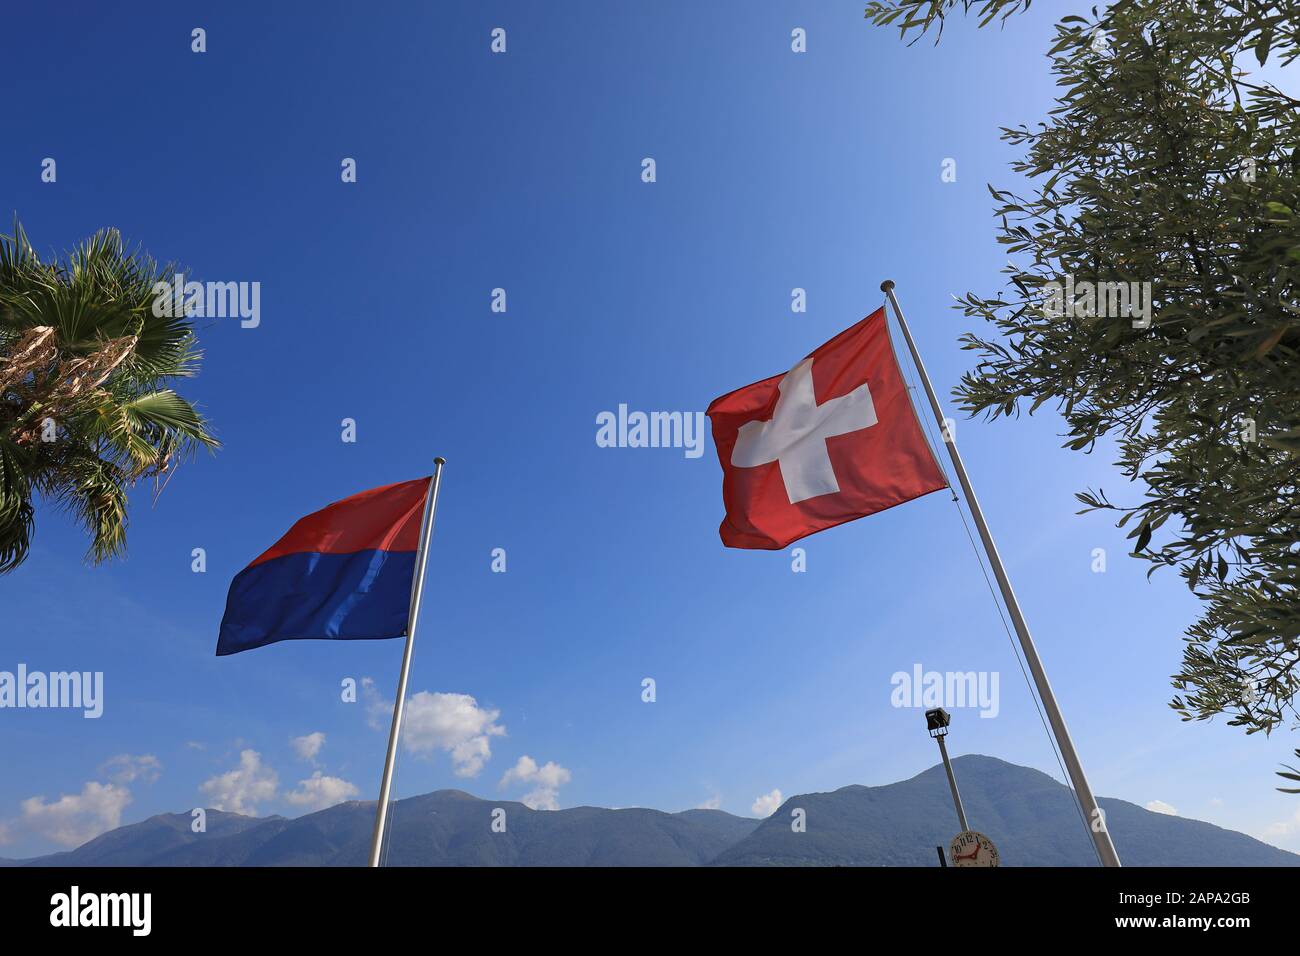 Flaggen der Schweiz und des Ticino im Dorf Brissago, Schweiz  Stockfotografie - Alamy